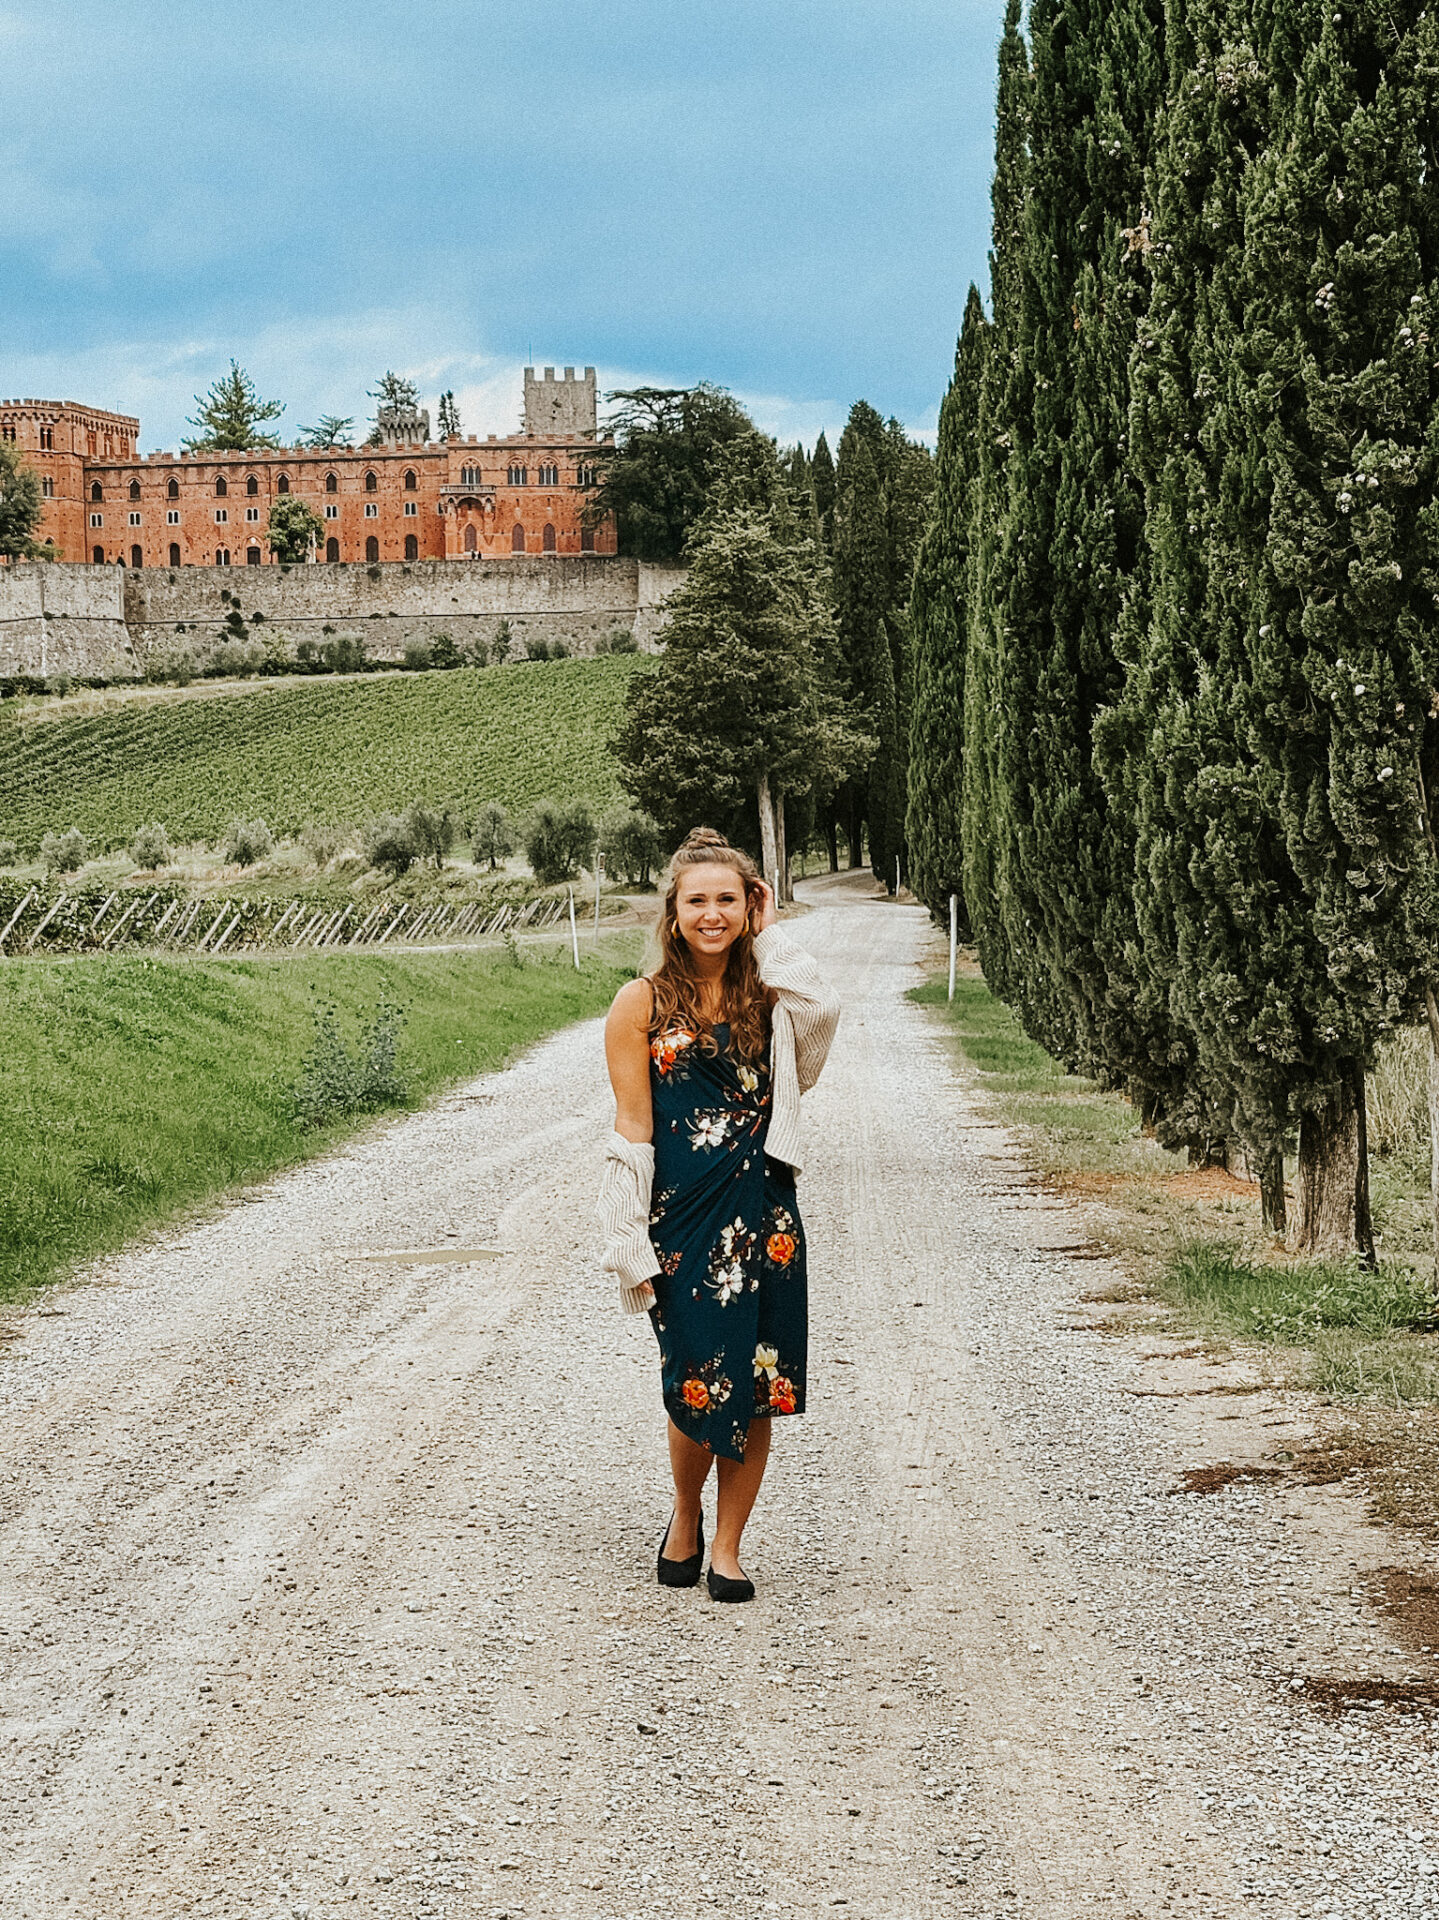 Paige in front of Castello di Brolio